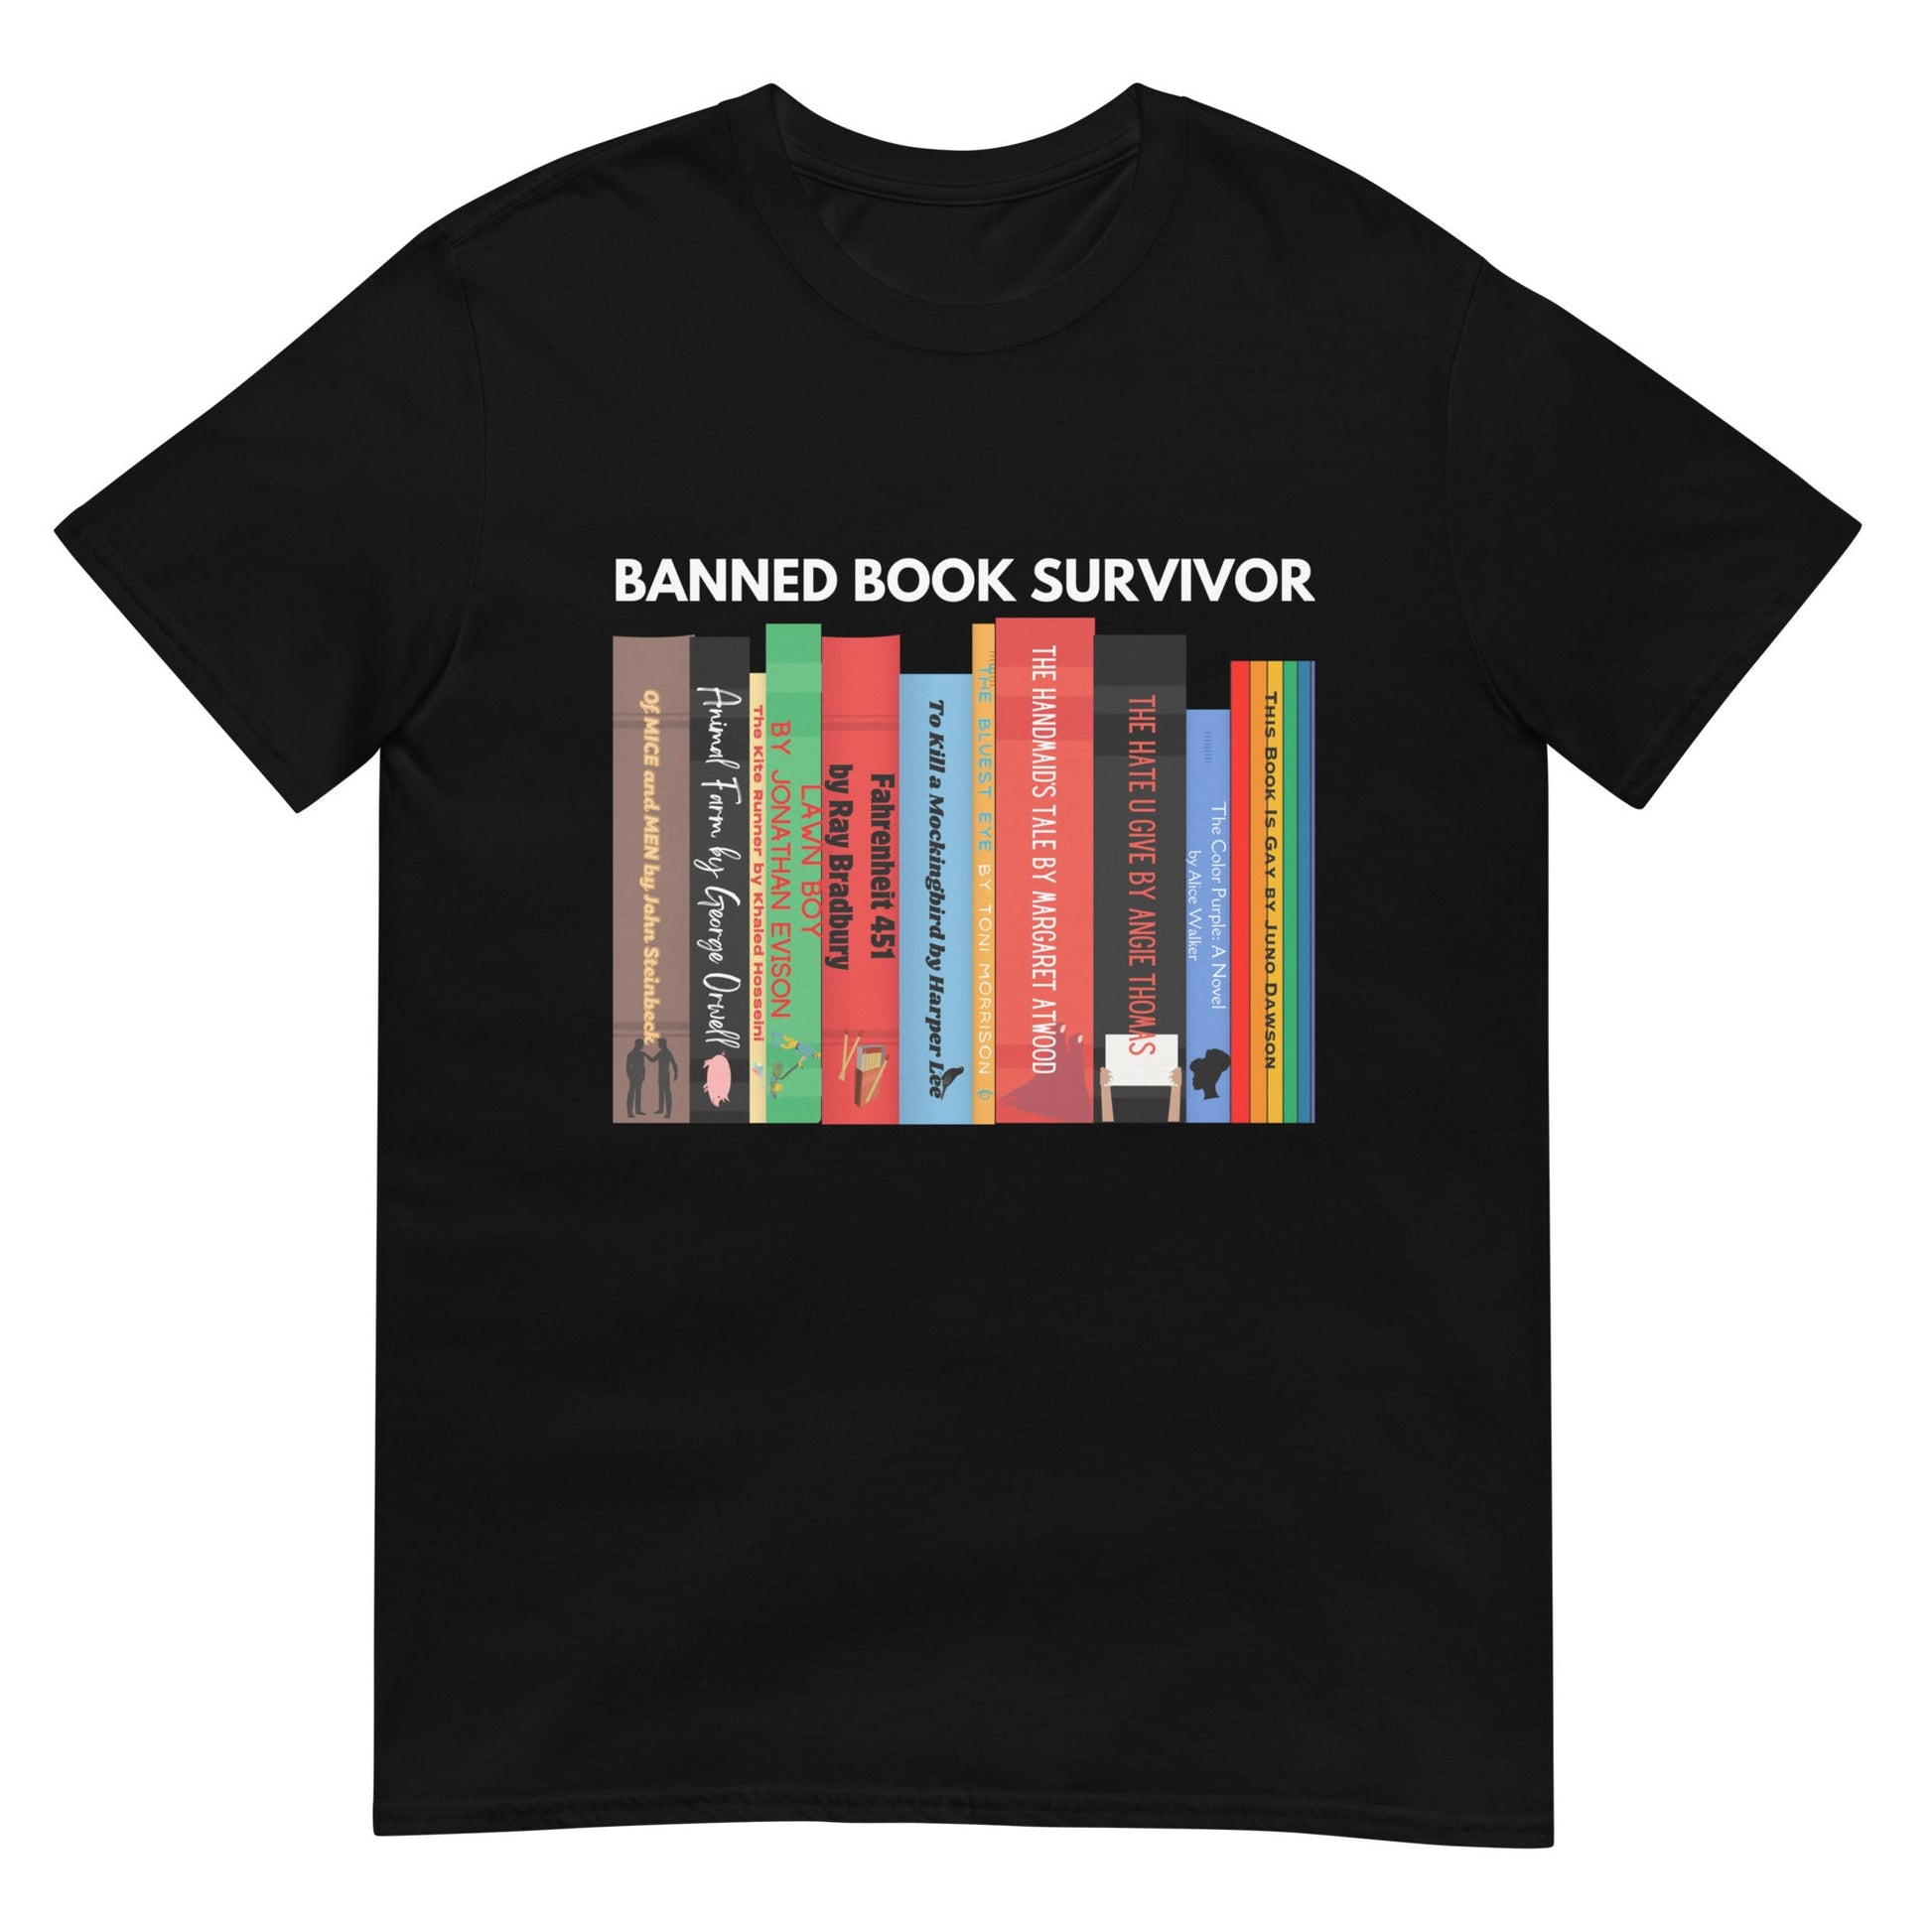 Banned Book Survivor T-Shirt - Kindle Crack